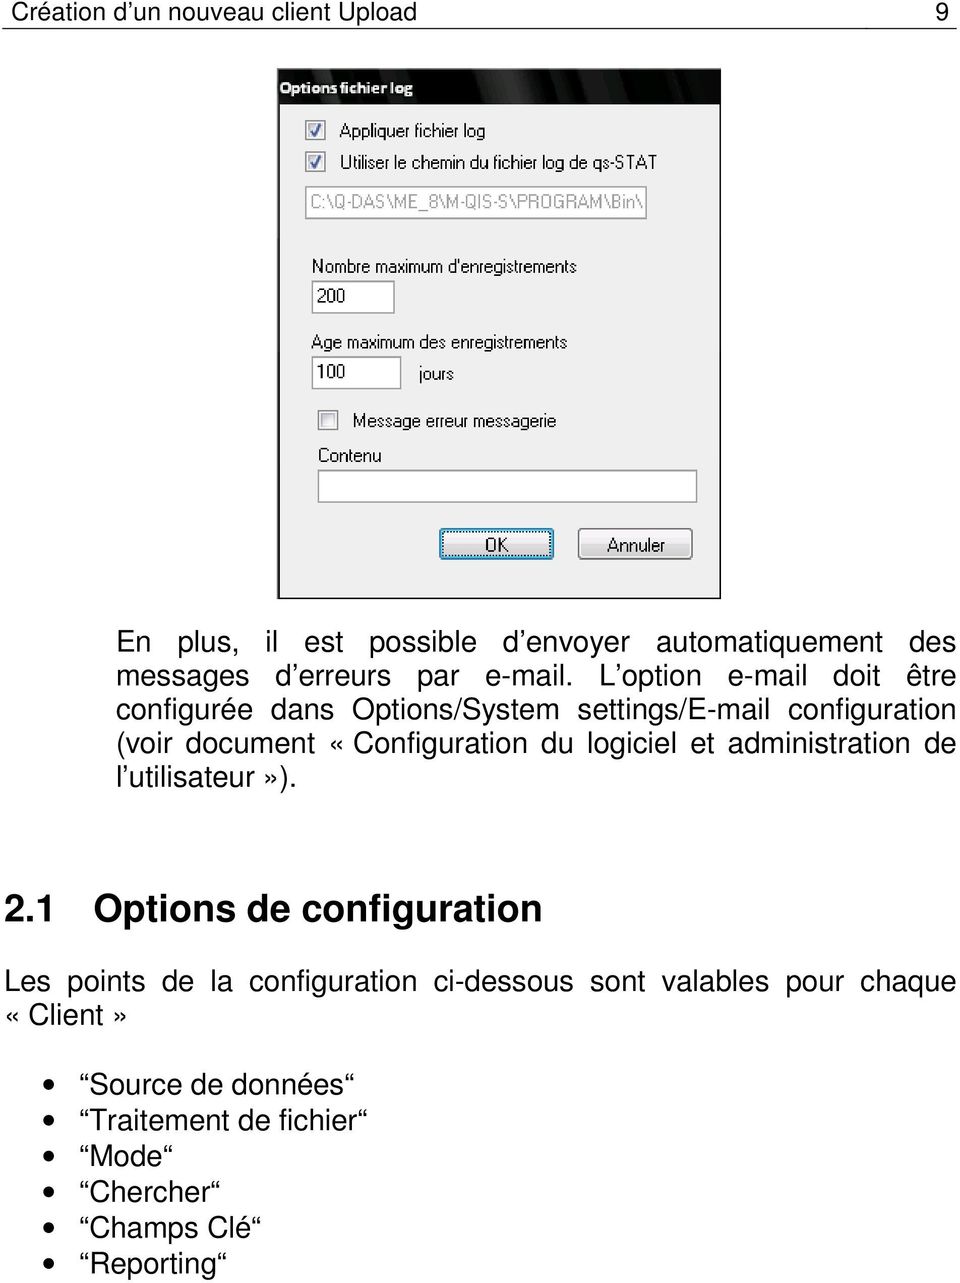 L option e-mail doit être configurée dans Options/System settings/e-mail configuration (voir document «Configuration